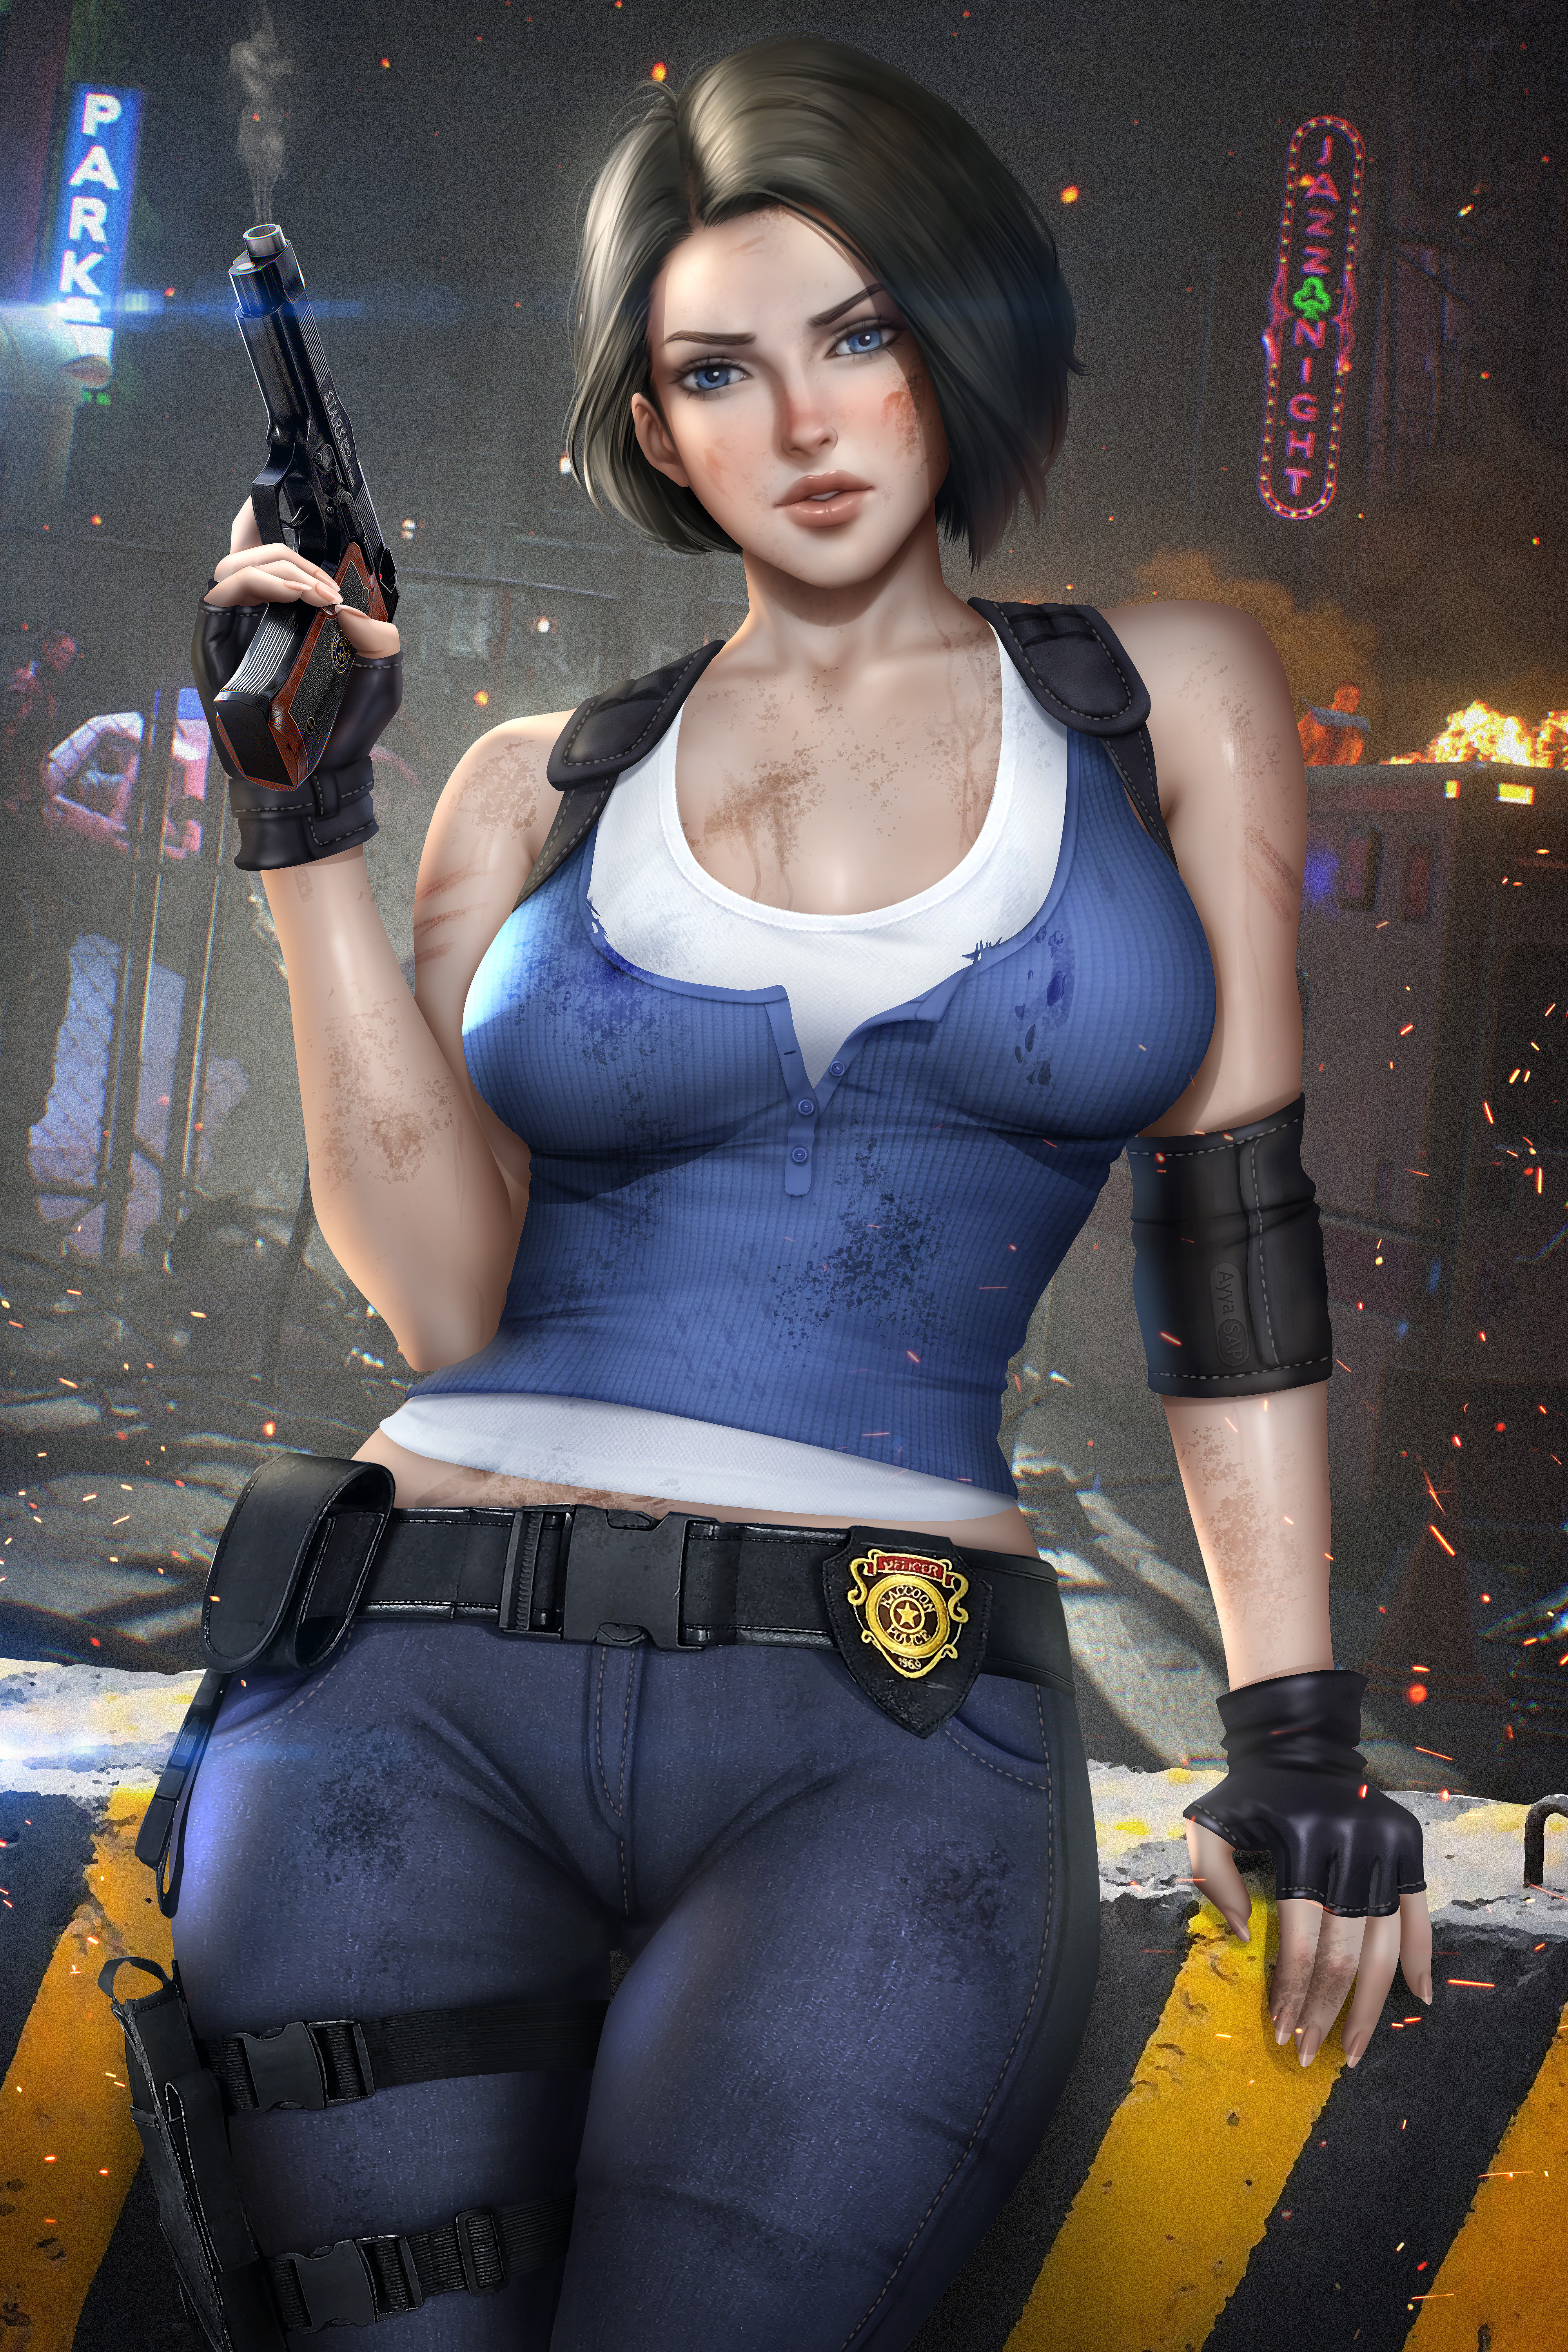 Jill Valentine Resident Evil PC Gaming Resident Evil 2 Remake Women Artwork Digital Art Video Games  4000x6000